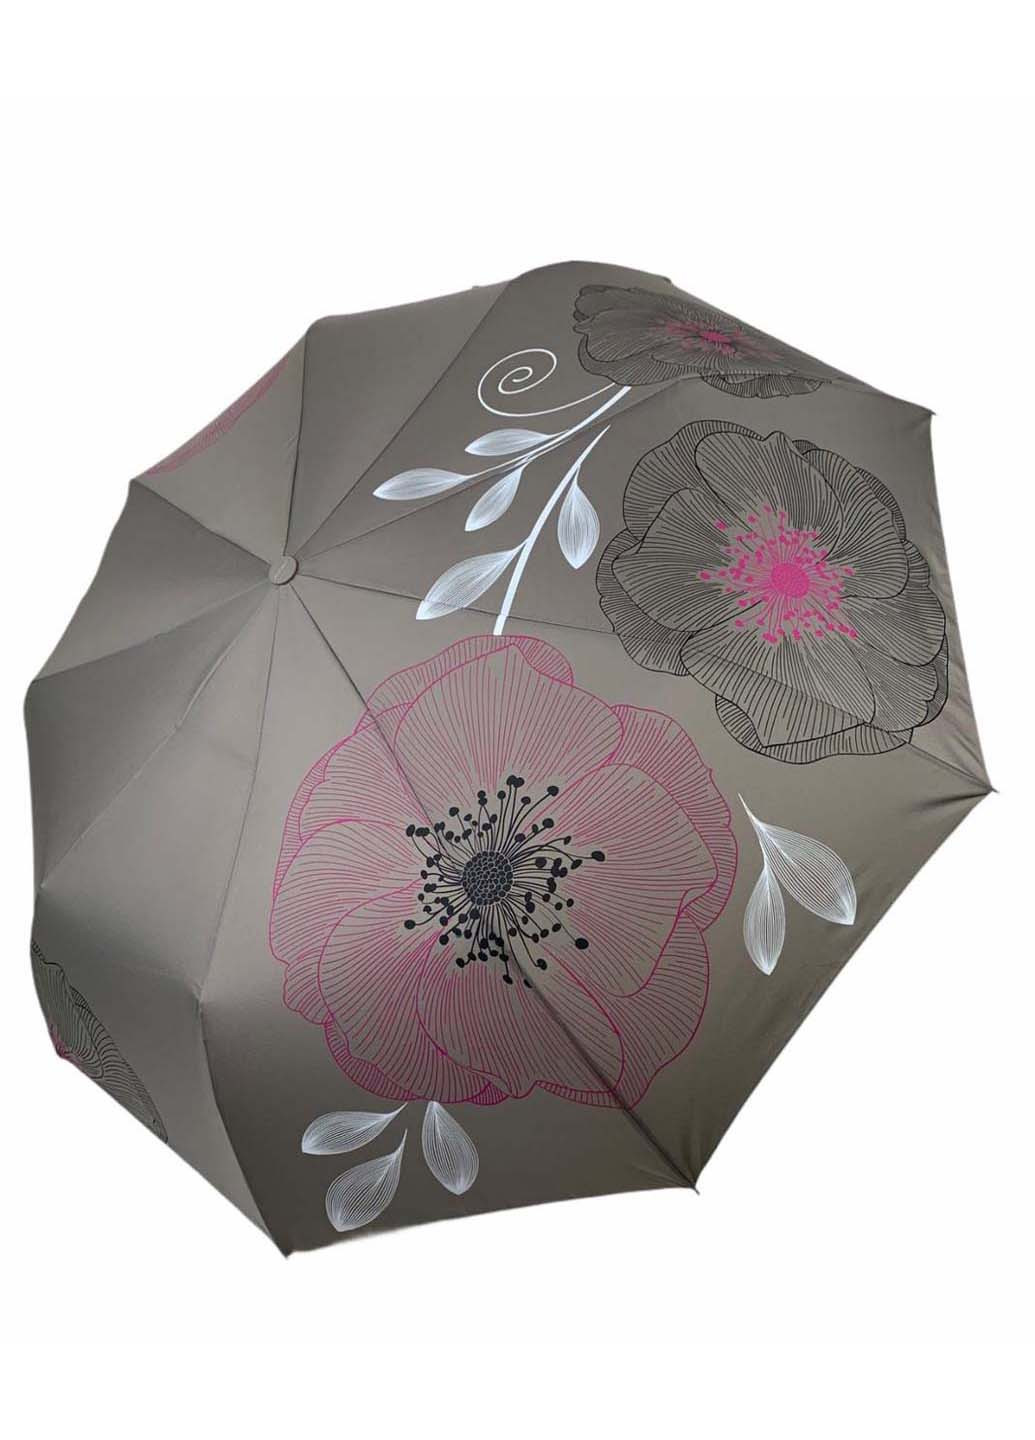 Женский складной зонт-полуавтомат от с принтом цветов Flagman складной серый